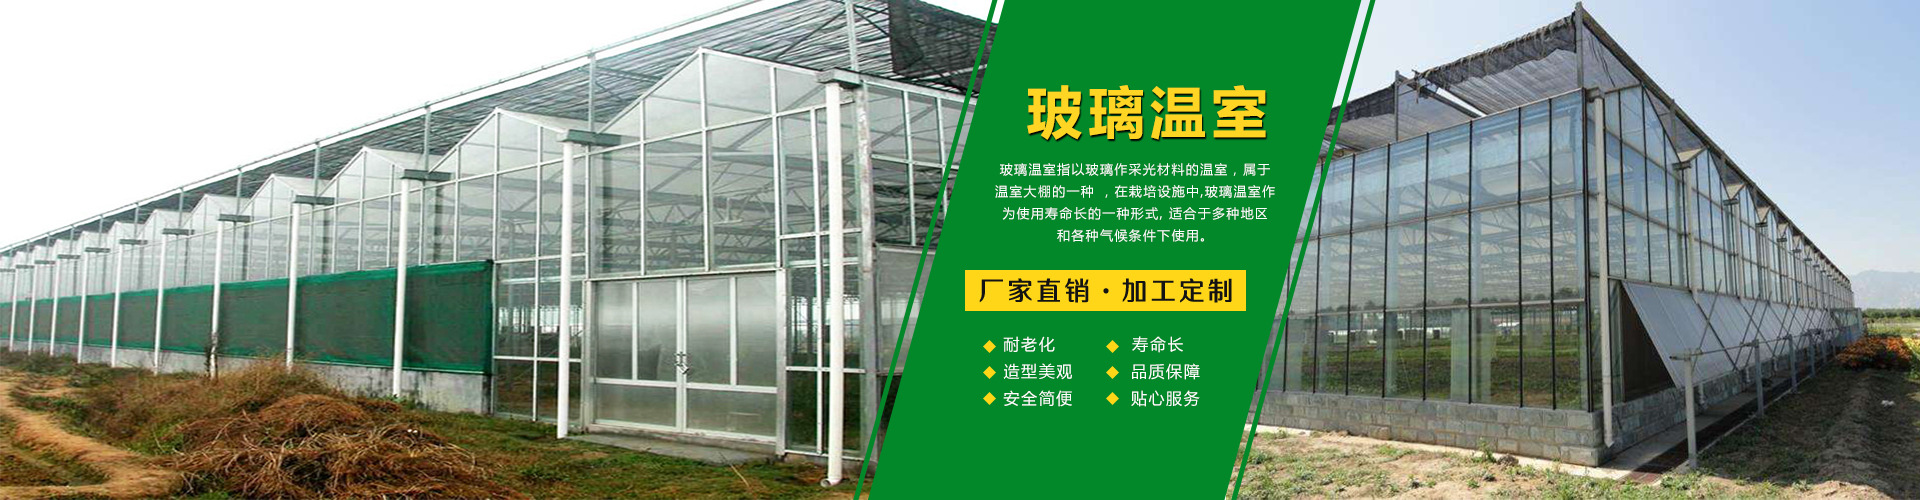 山东温室大棚工程造价 玻璃温室 连栋薄膜温室 阳光板温室示例图16